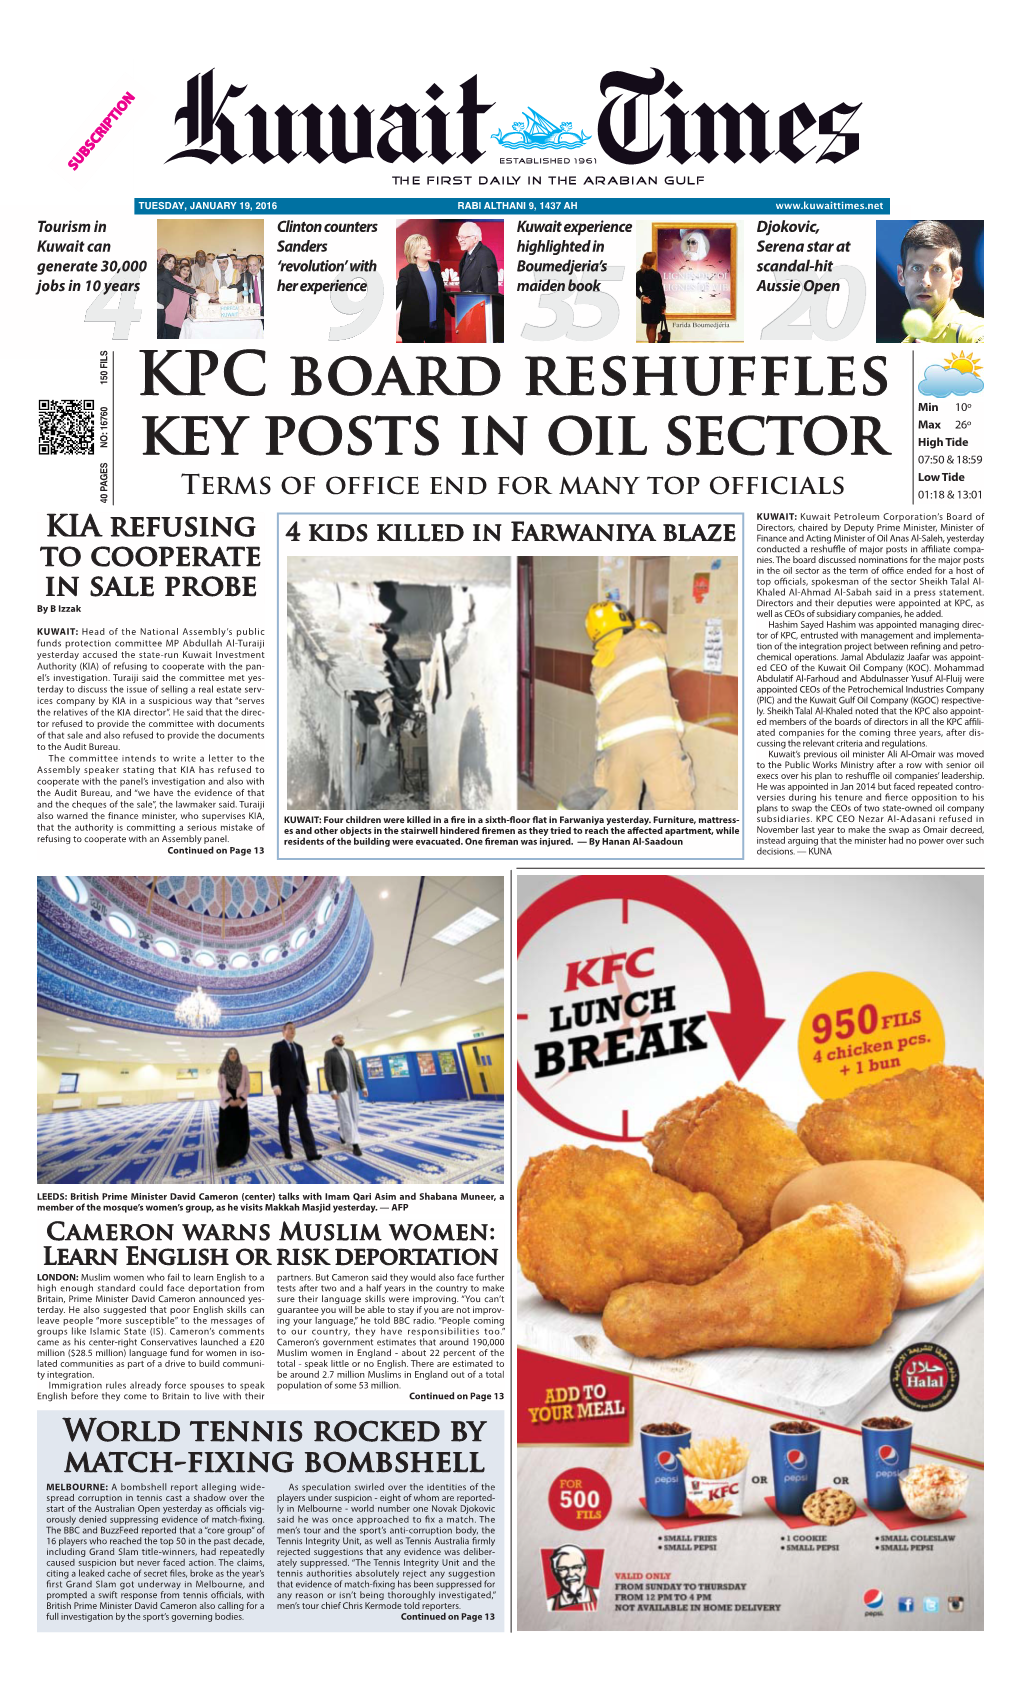 KPC Board Reshuffles Key Posts in Oil Sector